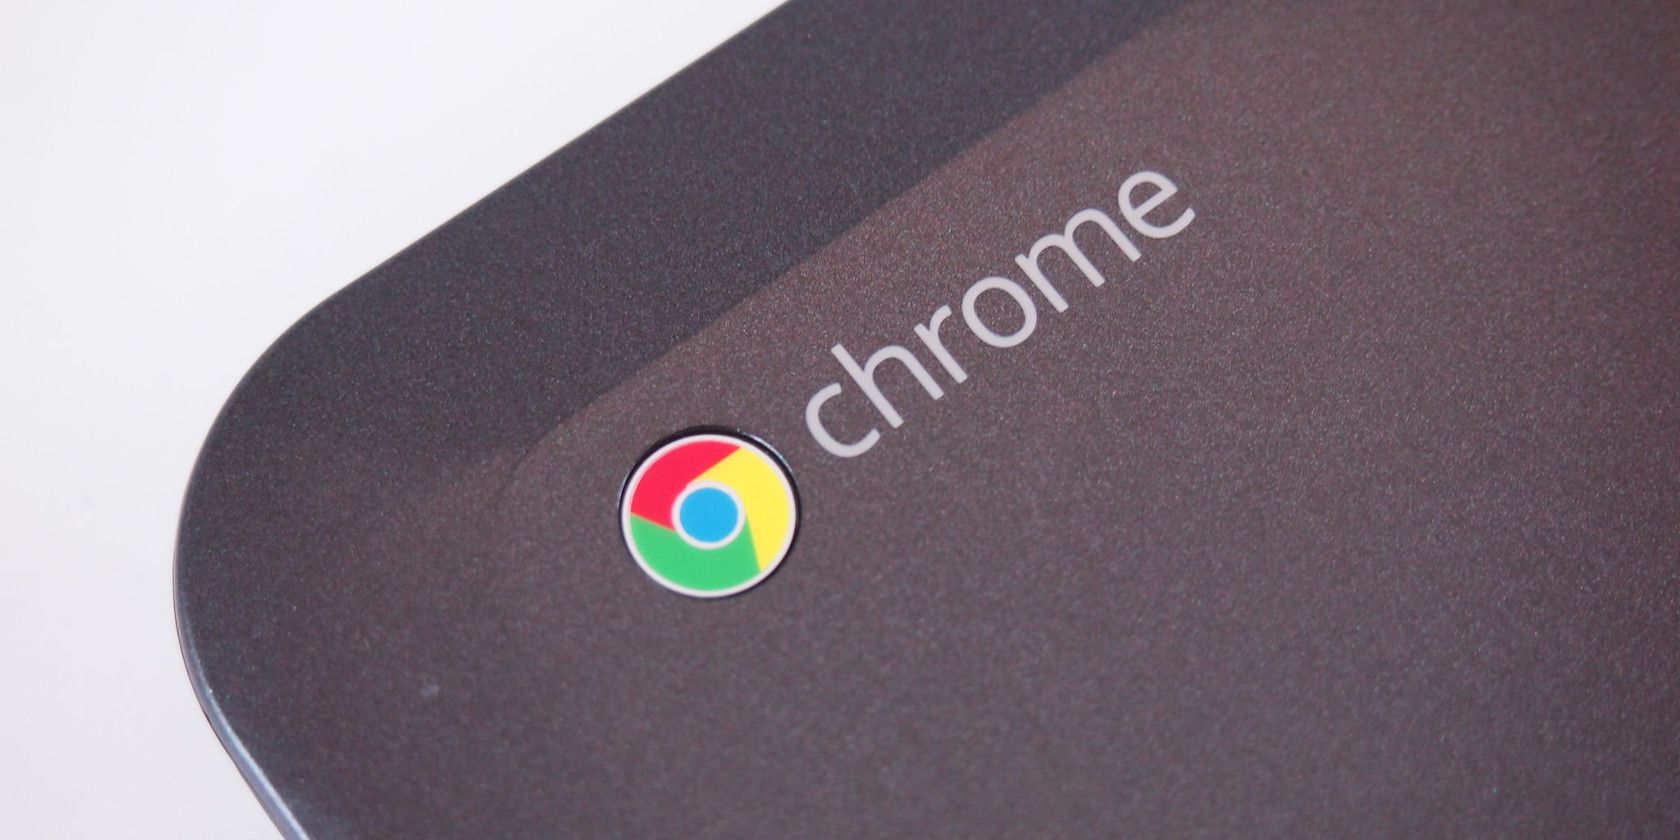 chrome logo on corner of chromebook laptop isolated